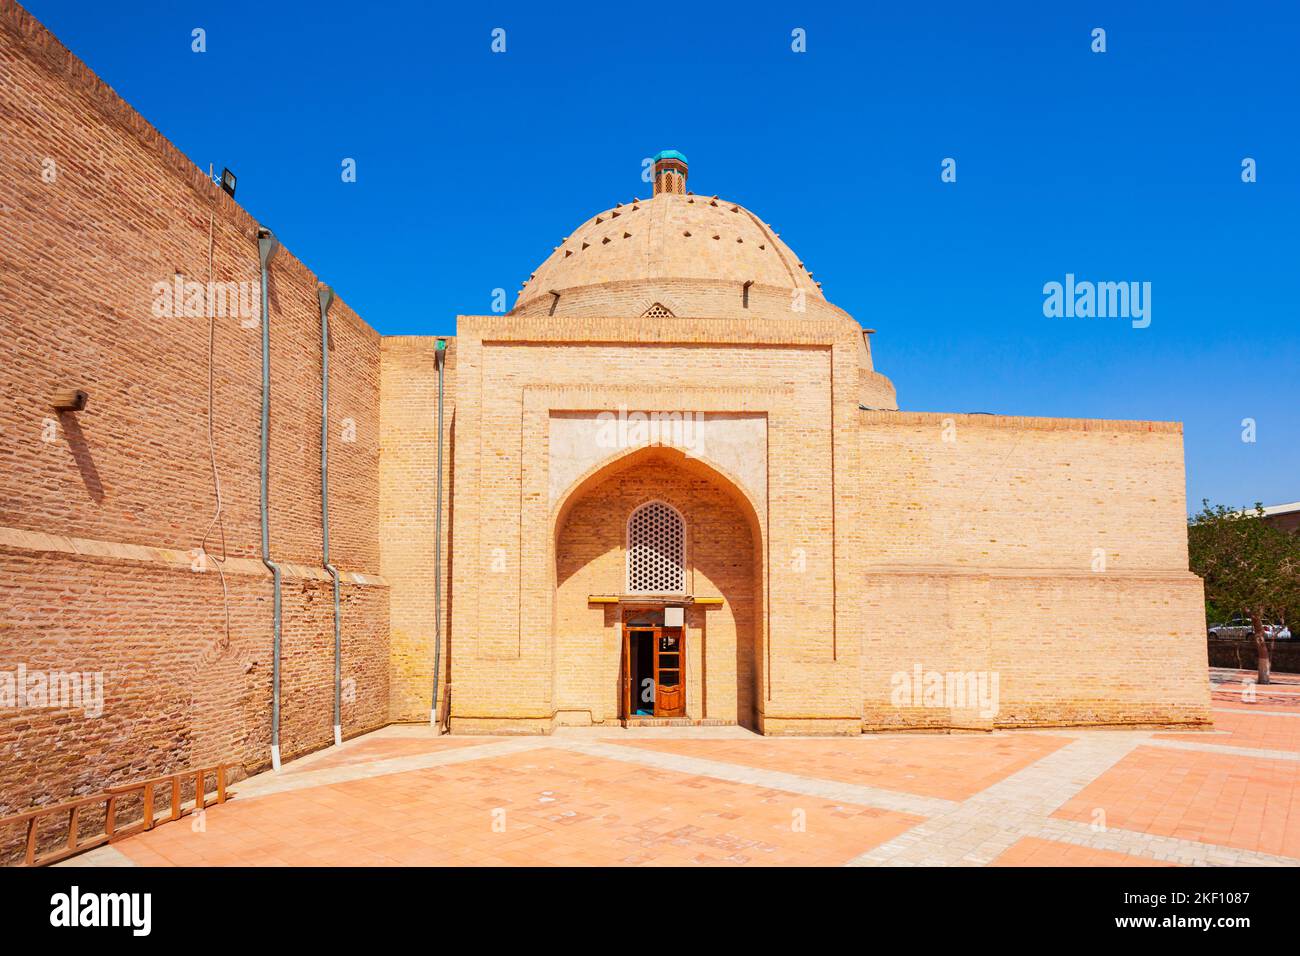 La mosquée Bolo Haouz ou Bolo Khauz est une mosquée historique, située en face de la forteresse Ark à Boukhara, en Ouzbékistan Banque D'Images